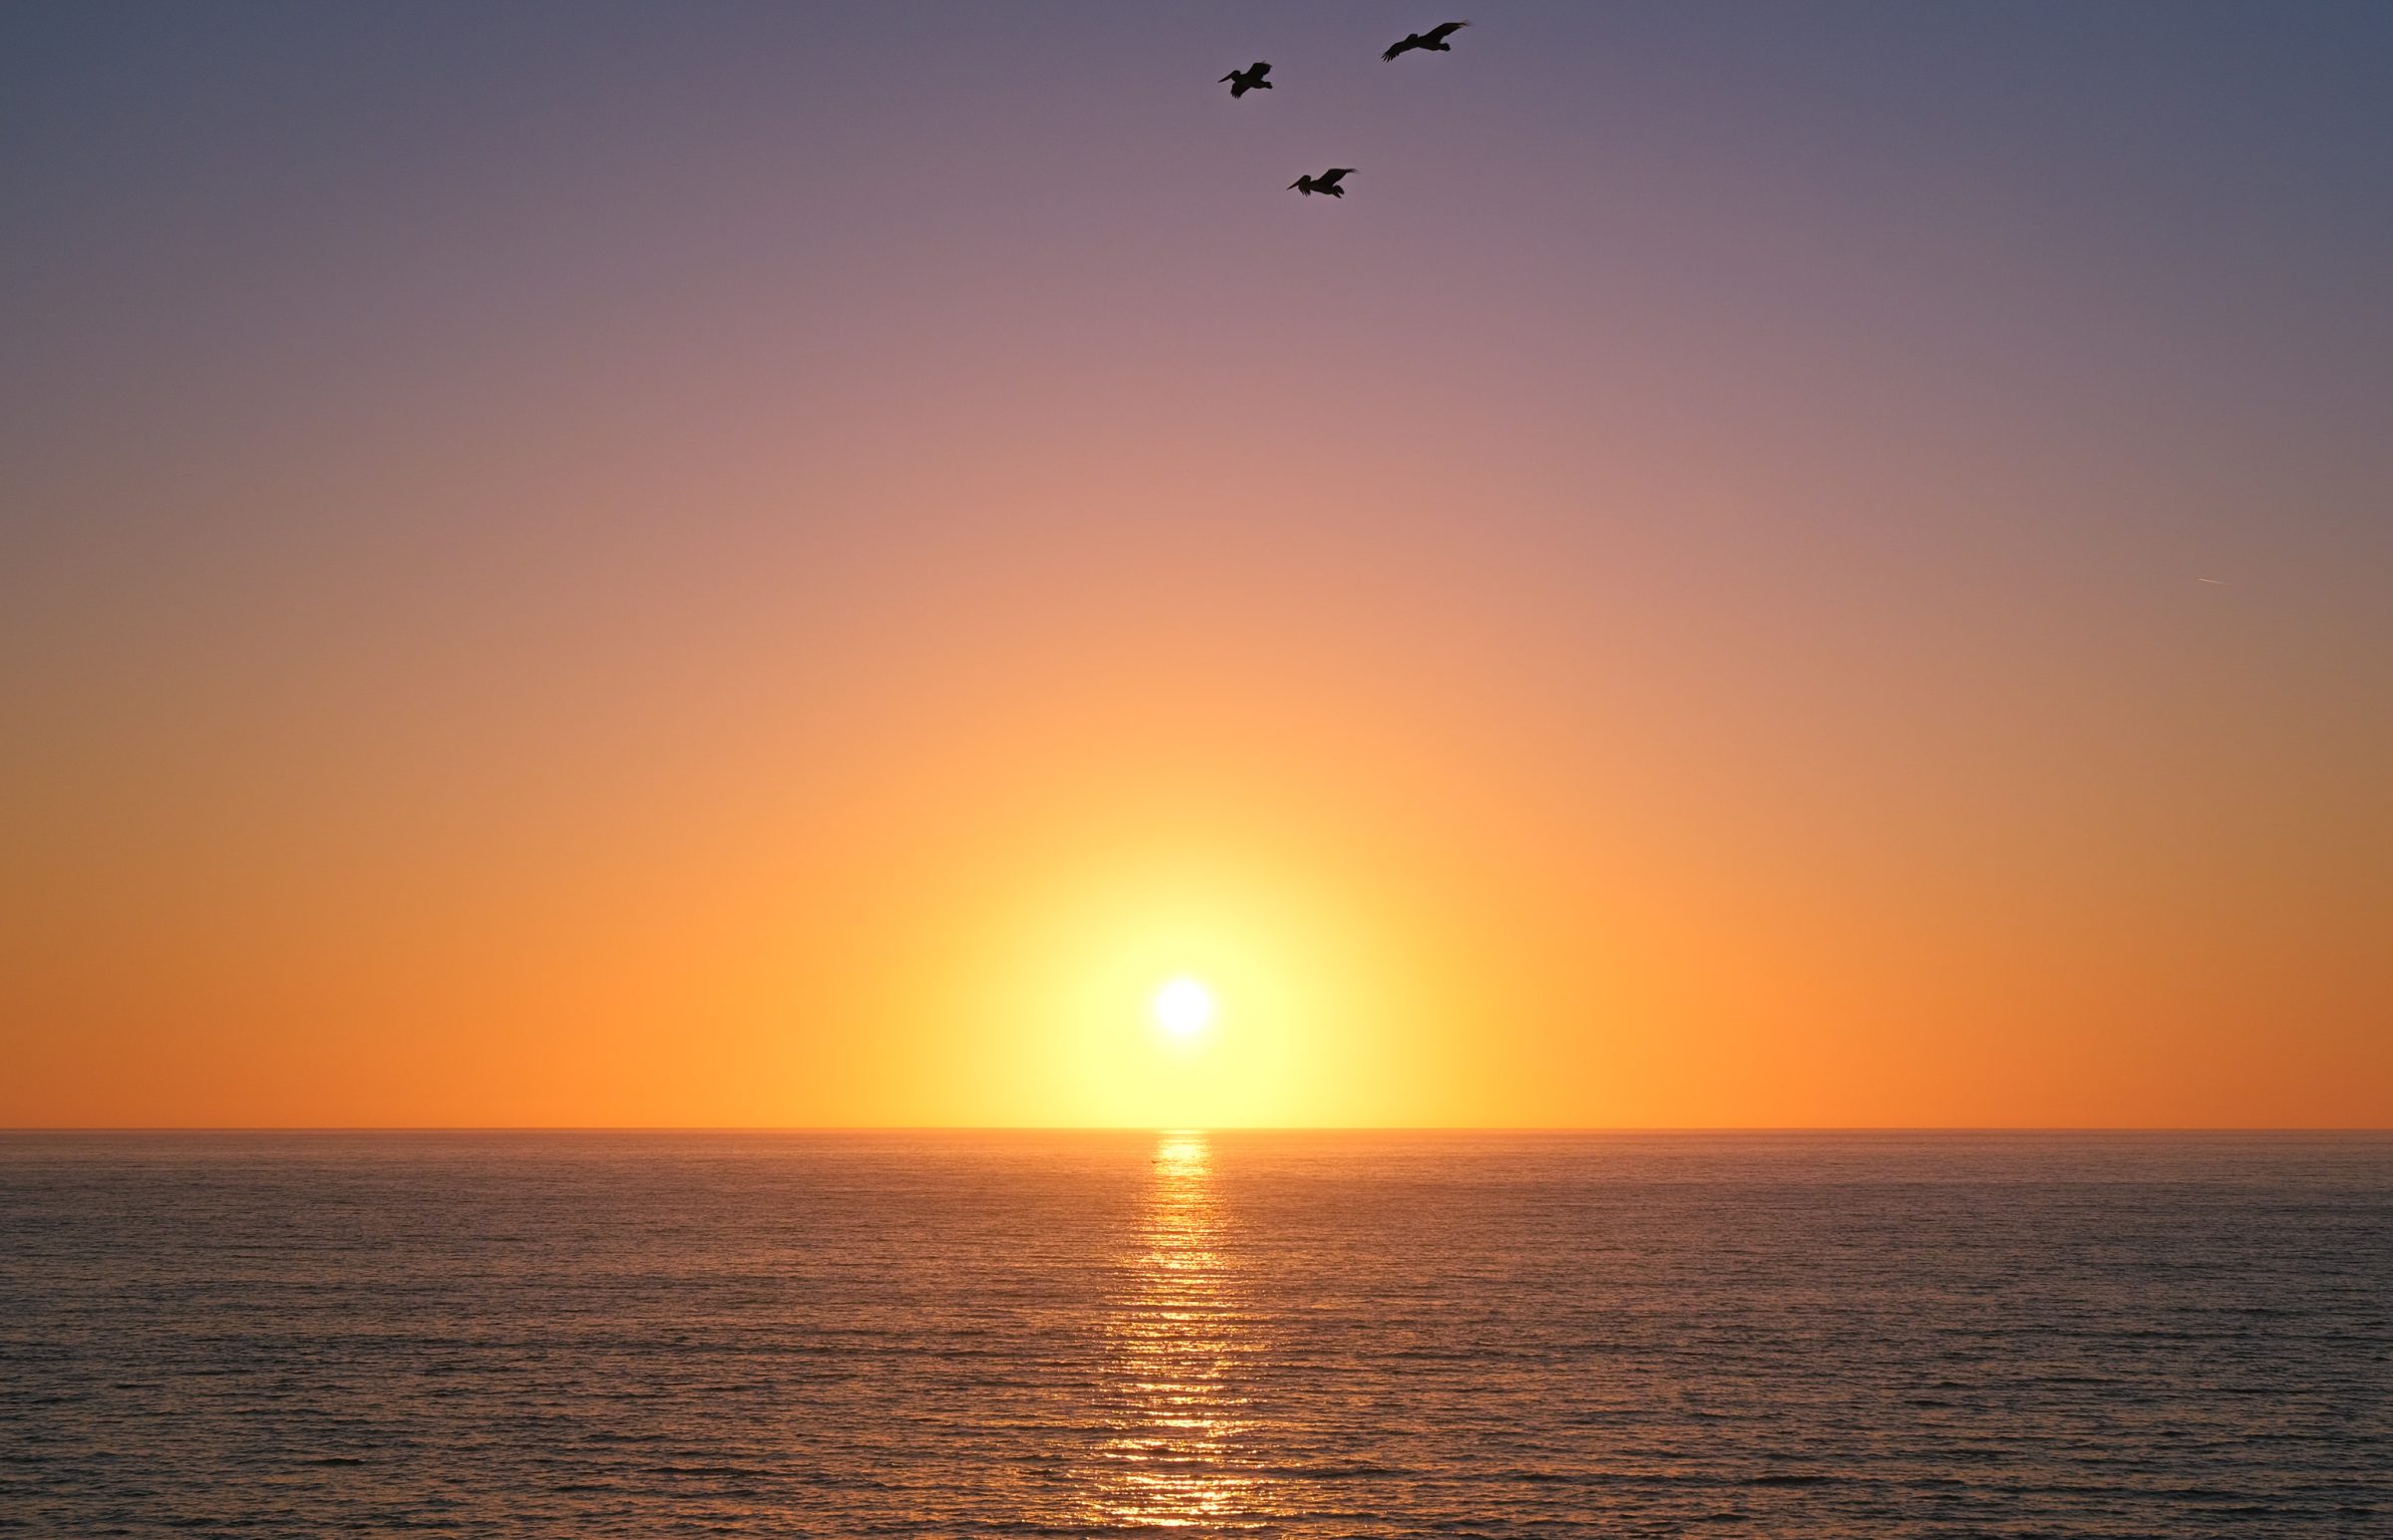 Mirno morje, zahajajoče sonce in pelikani, ki letajo nad glavami. Končni mir.